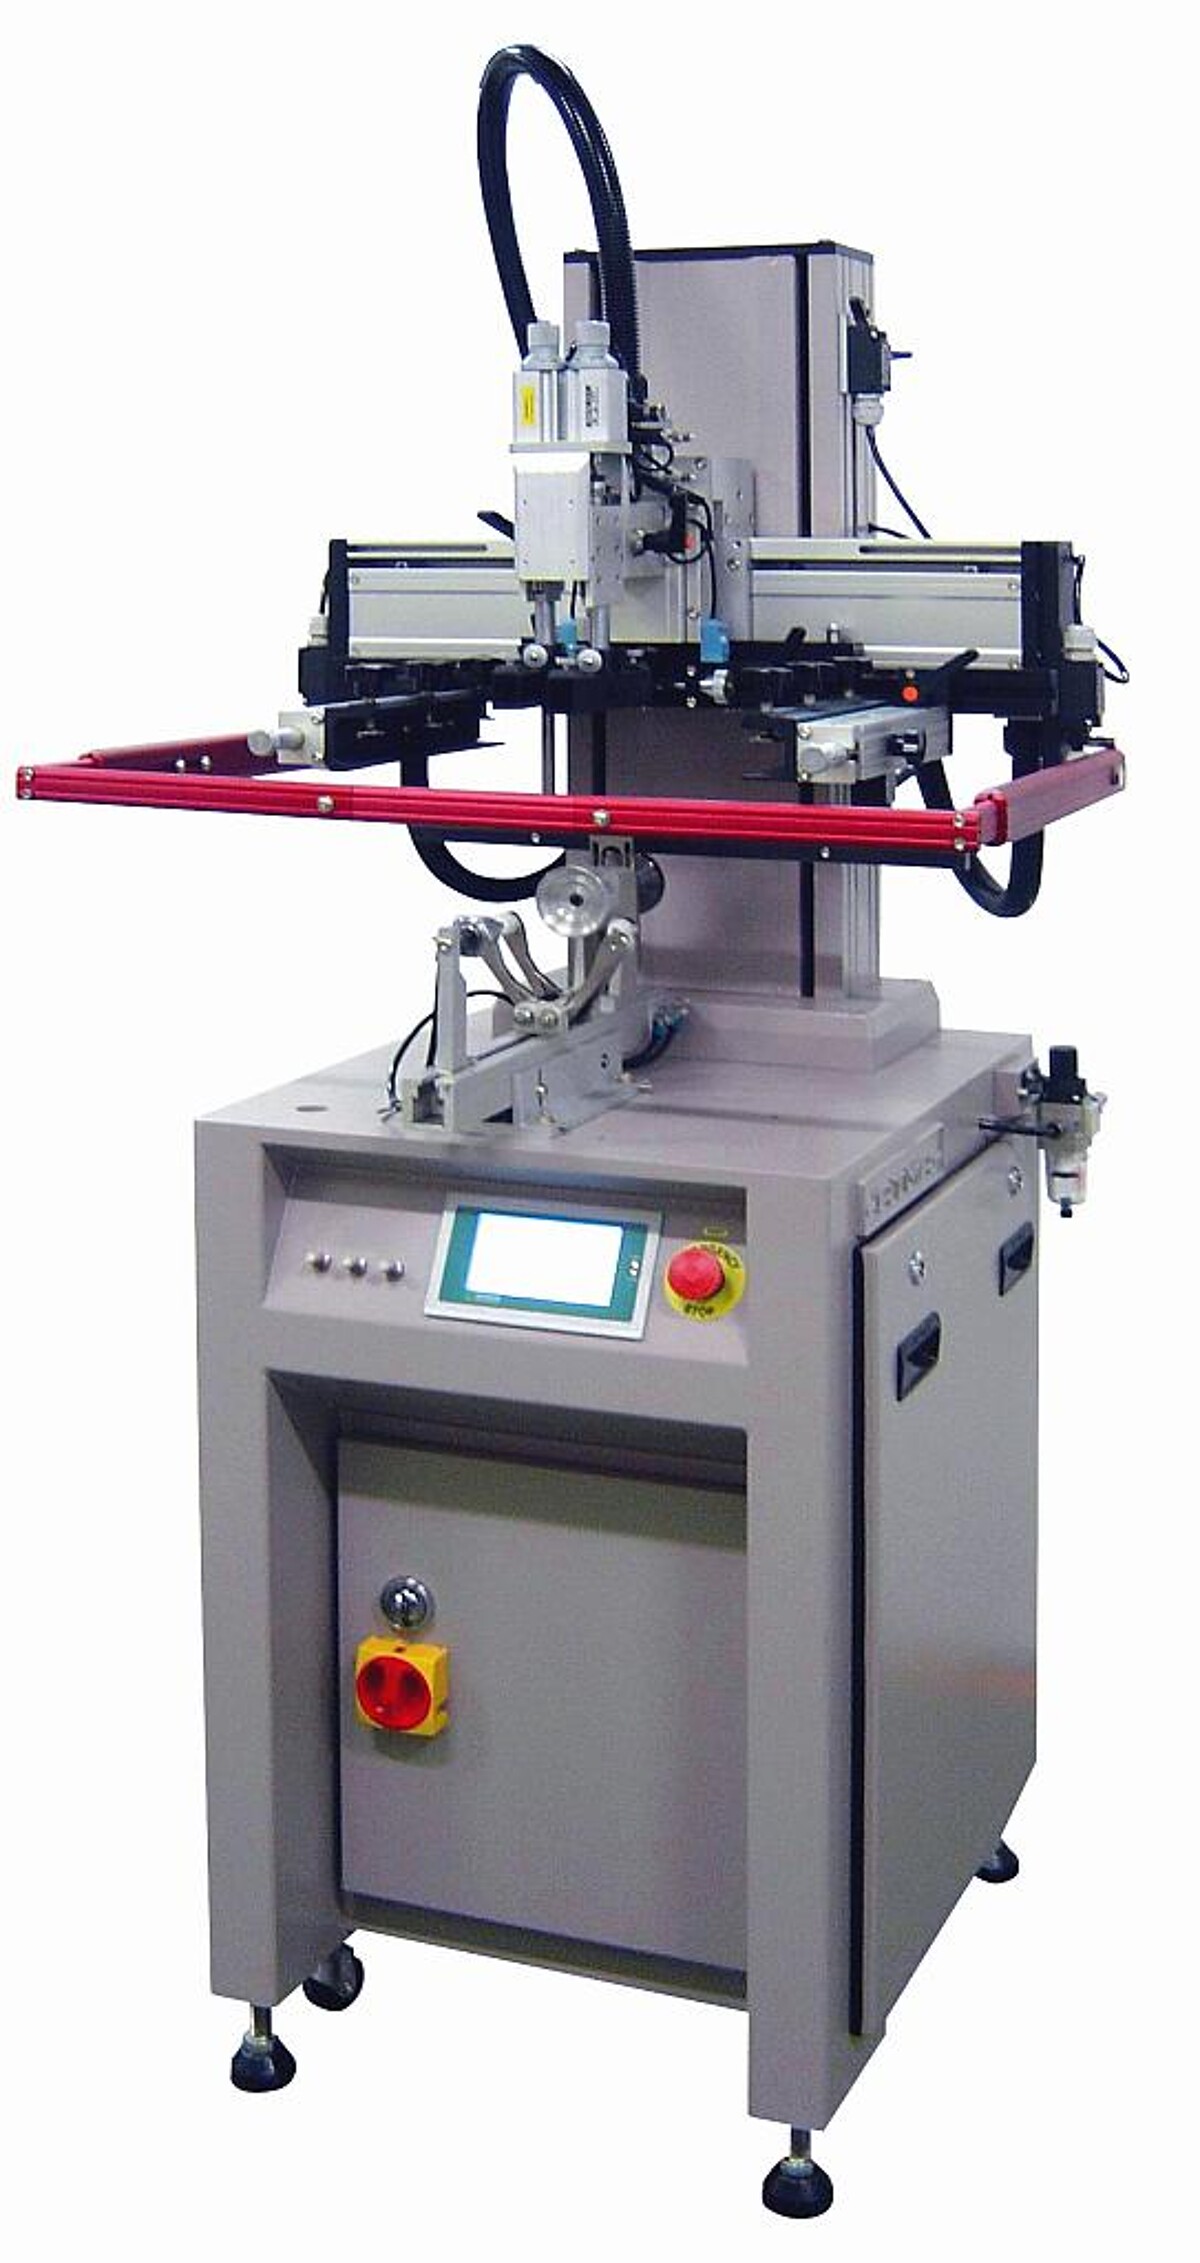 Die Siebdruckmaschine AT PAB 45 ist für den Flach-, Rund- und Ovaldruck ausgelegt. (Foto: ESC)